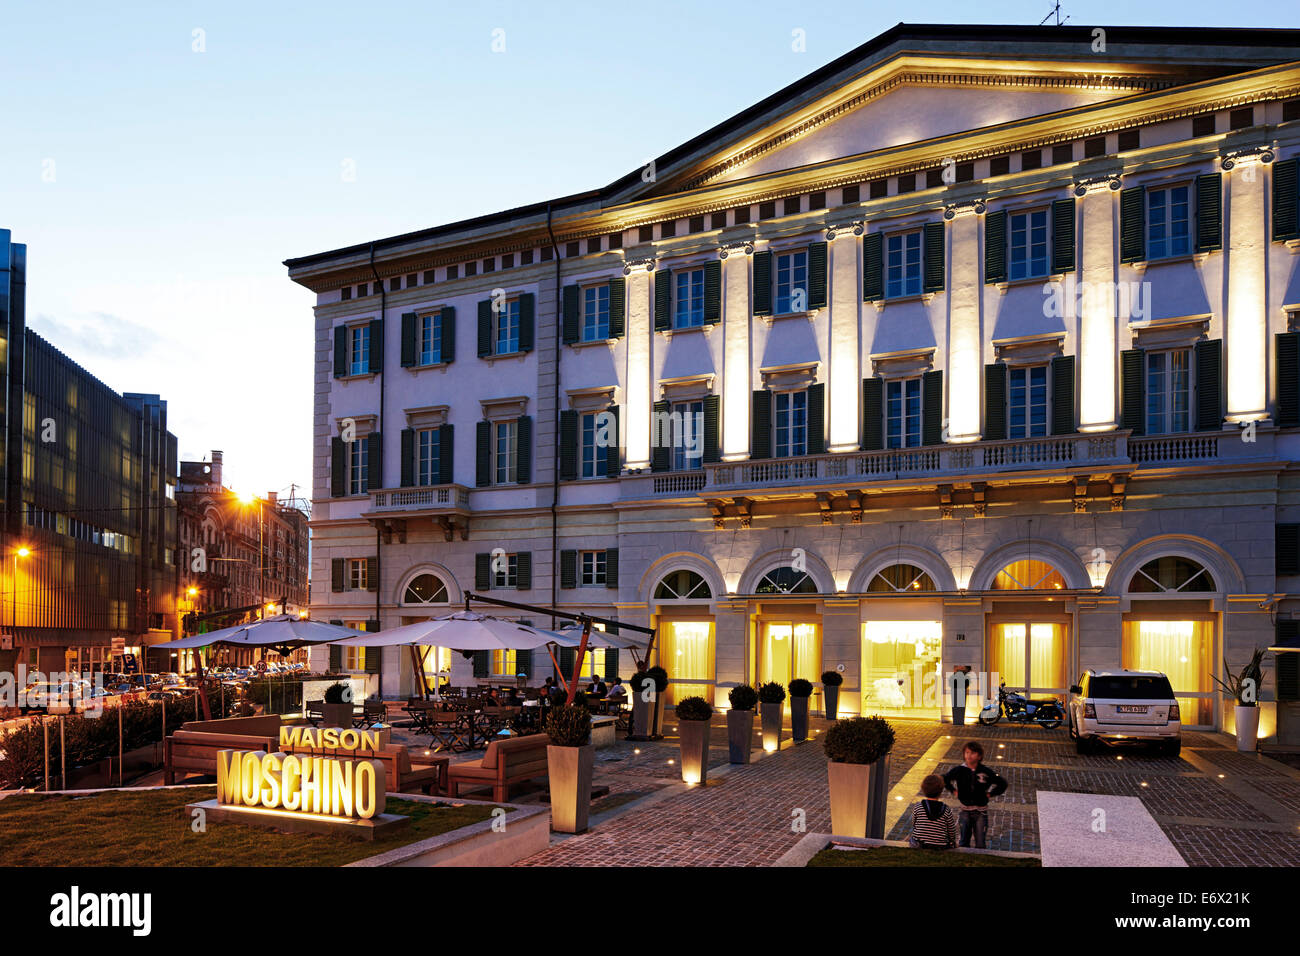 Vue extérieure de l'Hotel Maison Moschino, Via Monte Grappa 12, Milan, Italie Banque D'Images